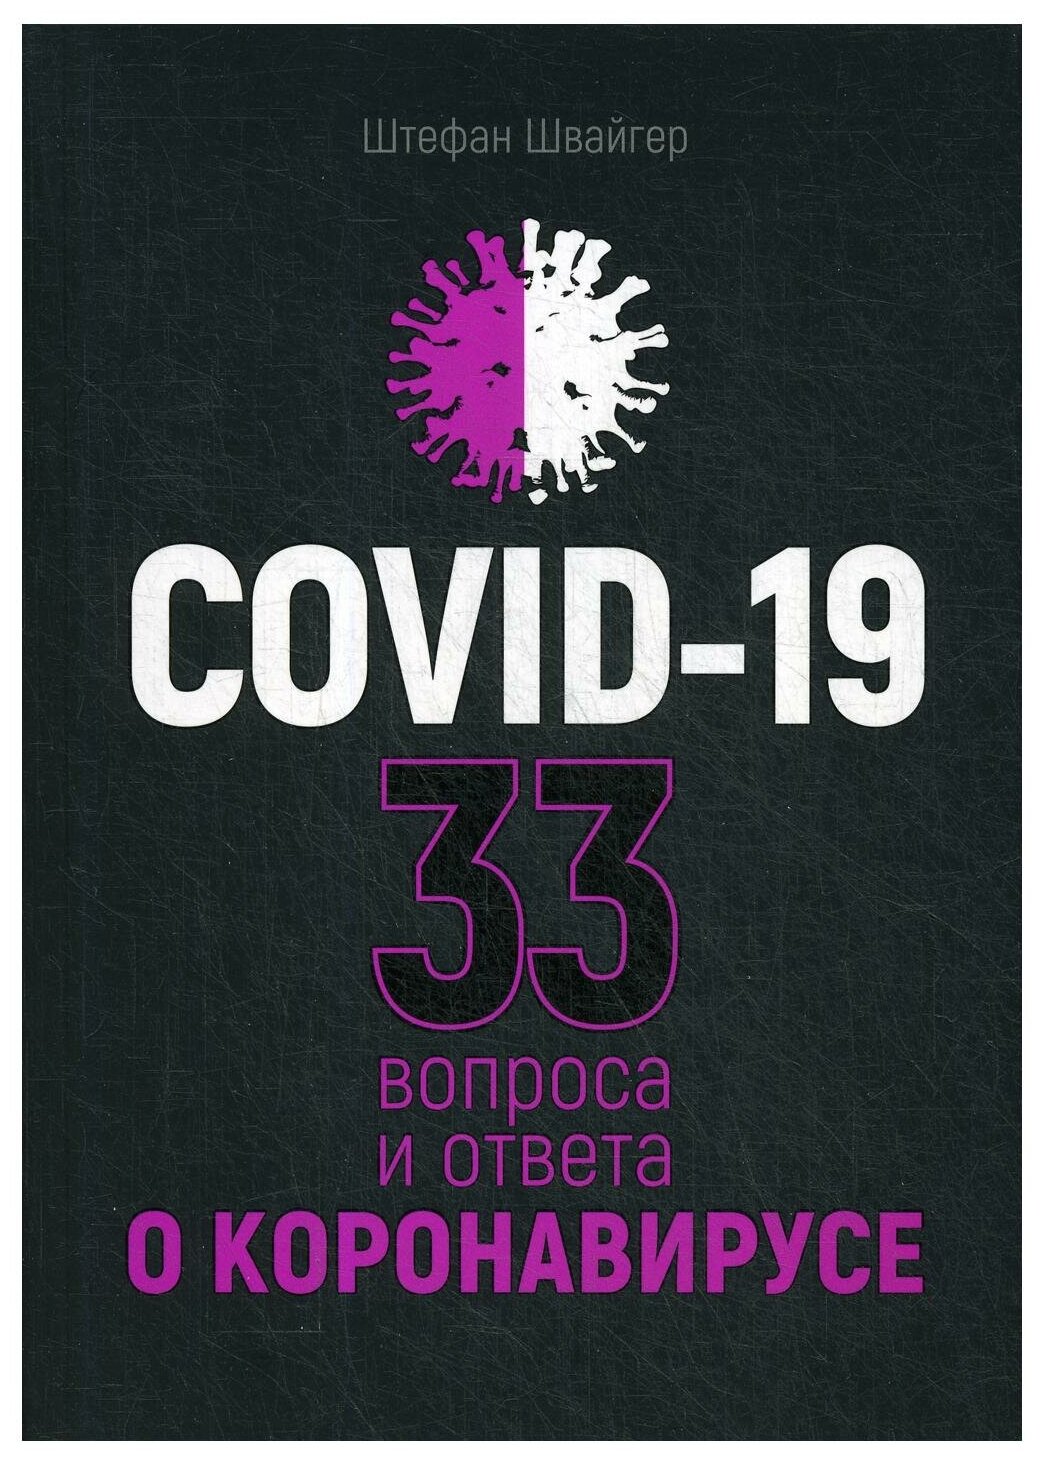 Covid-19. 33 вопроса и ответа о коронавирусе - фото №1